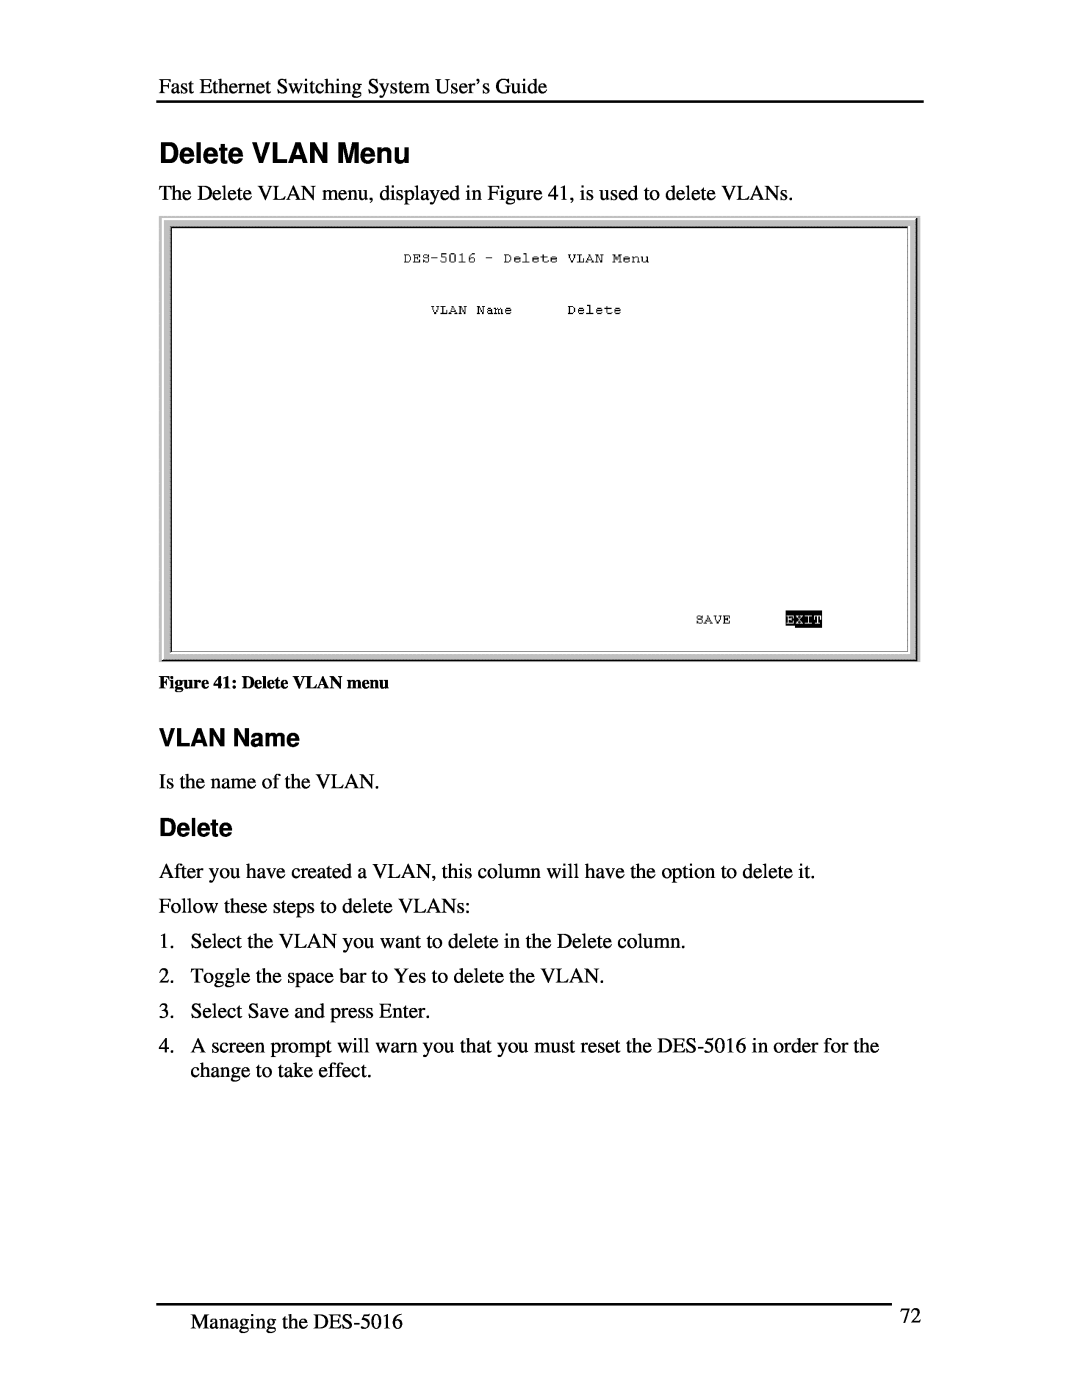 D-Link DES-5016 manual Delete VLAN Menu, VLAN Name, Delete VLAN menu 